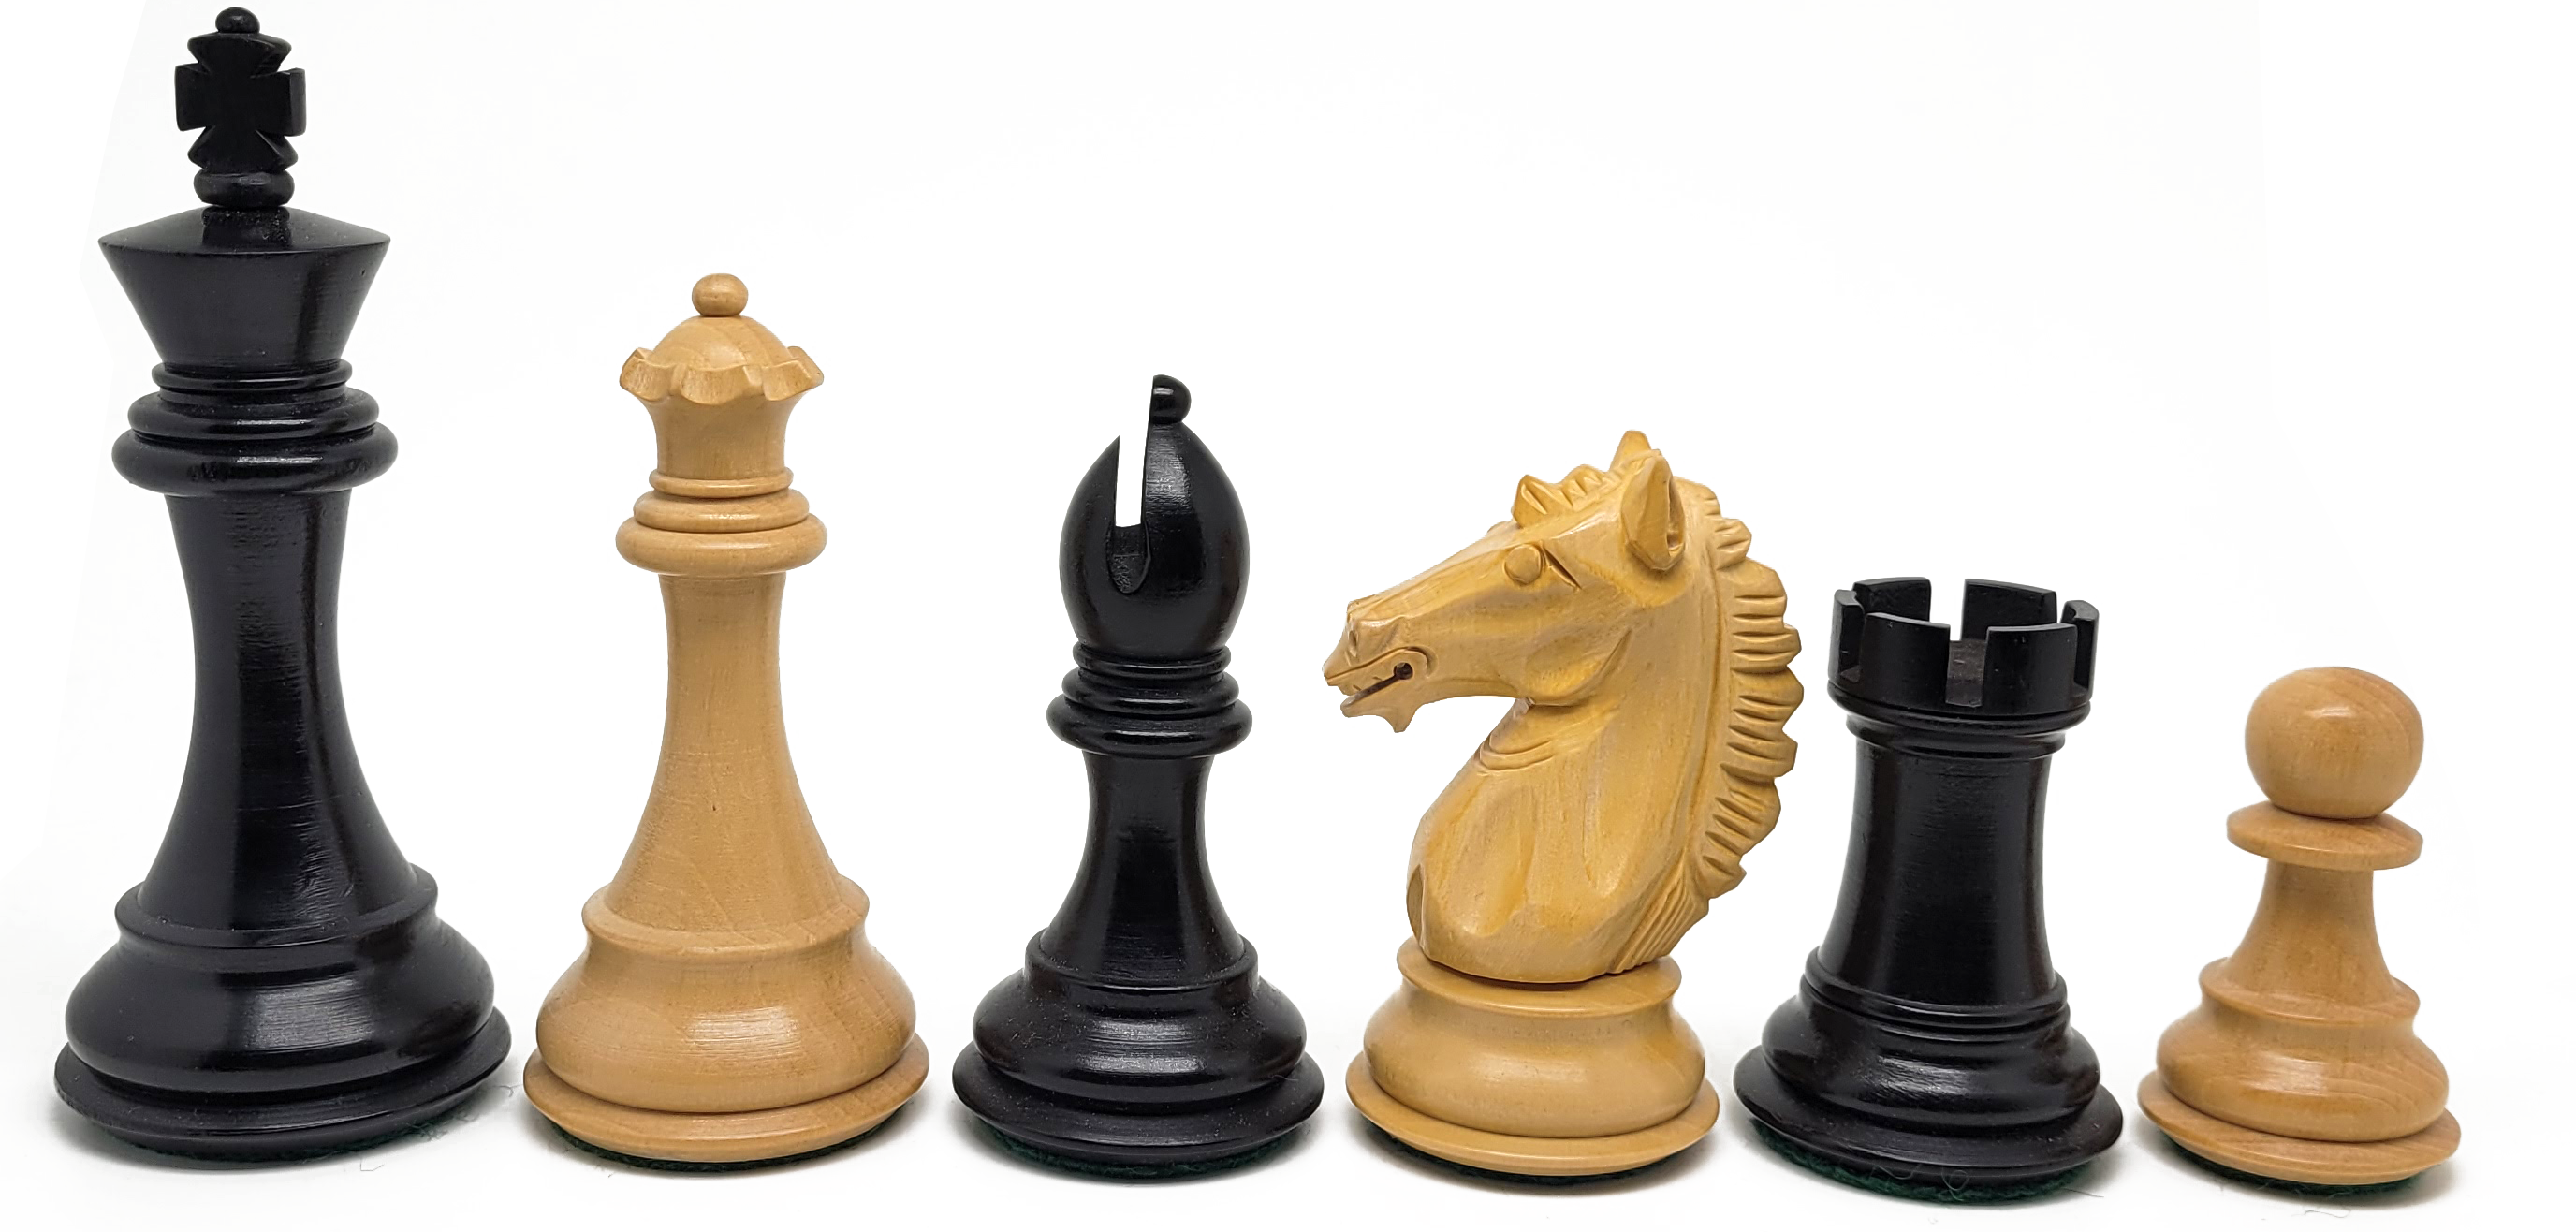 VI/ Piezas de ajedrez modelo Alban "4" Ebanizado. 5197